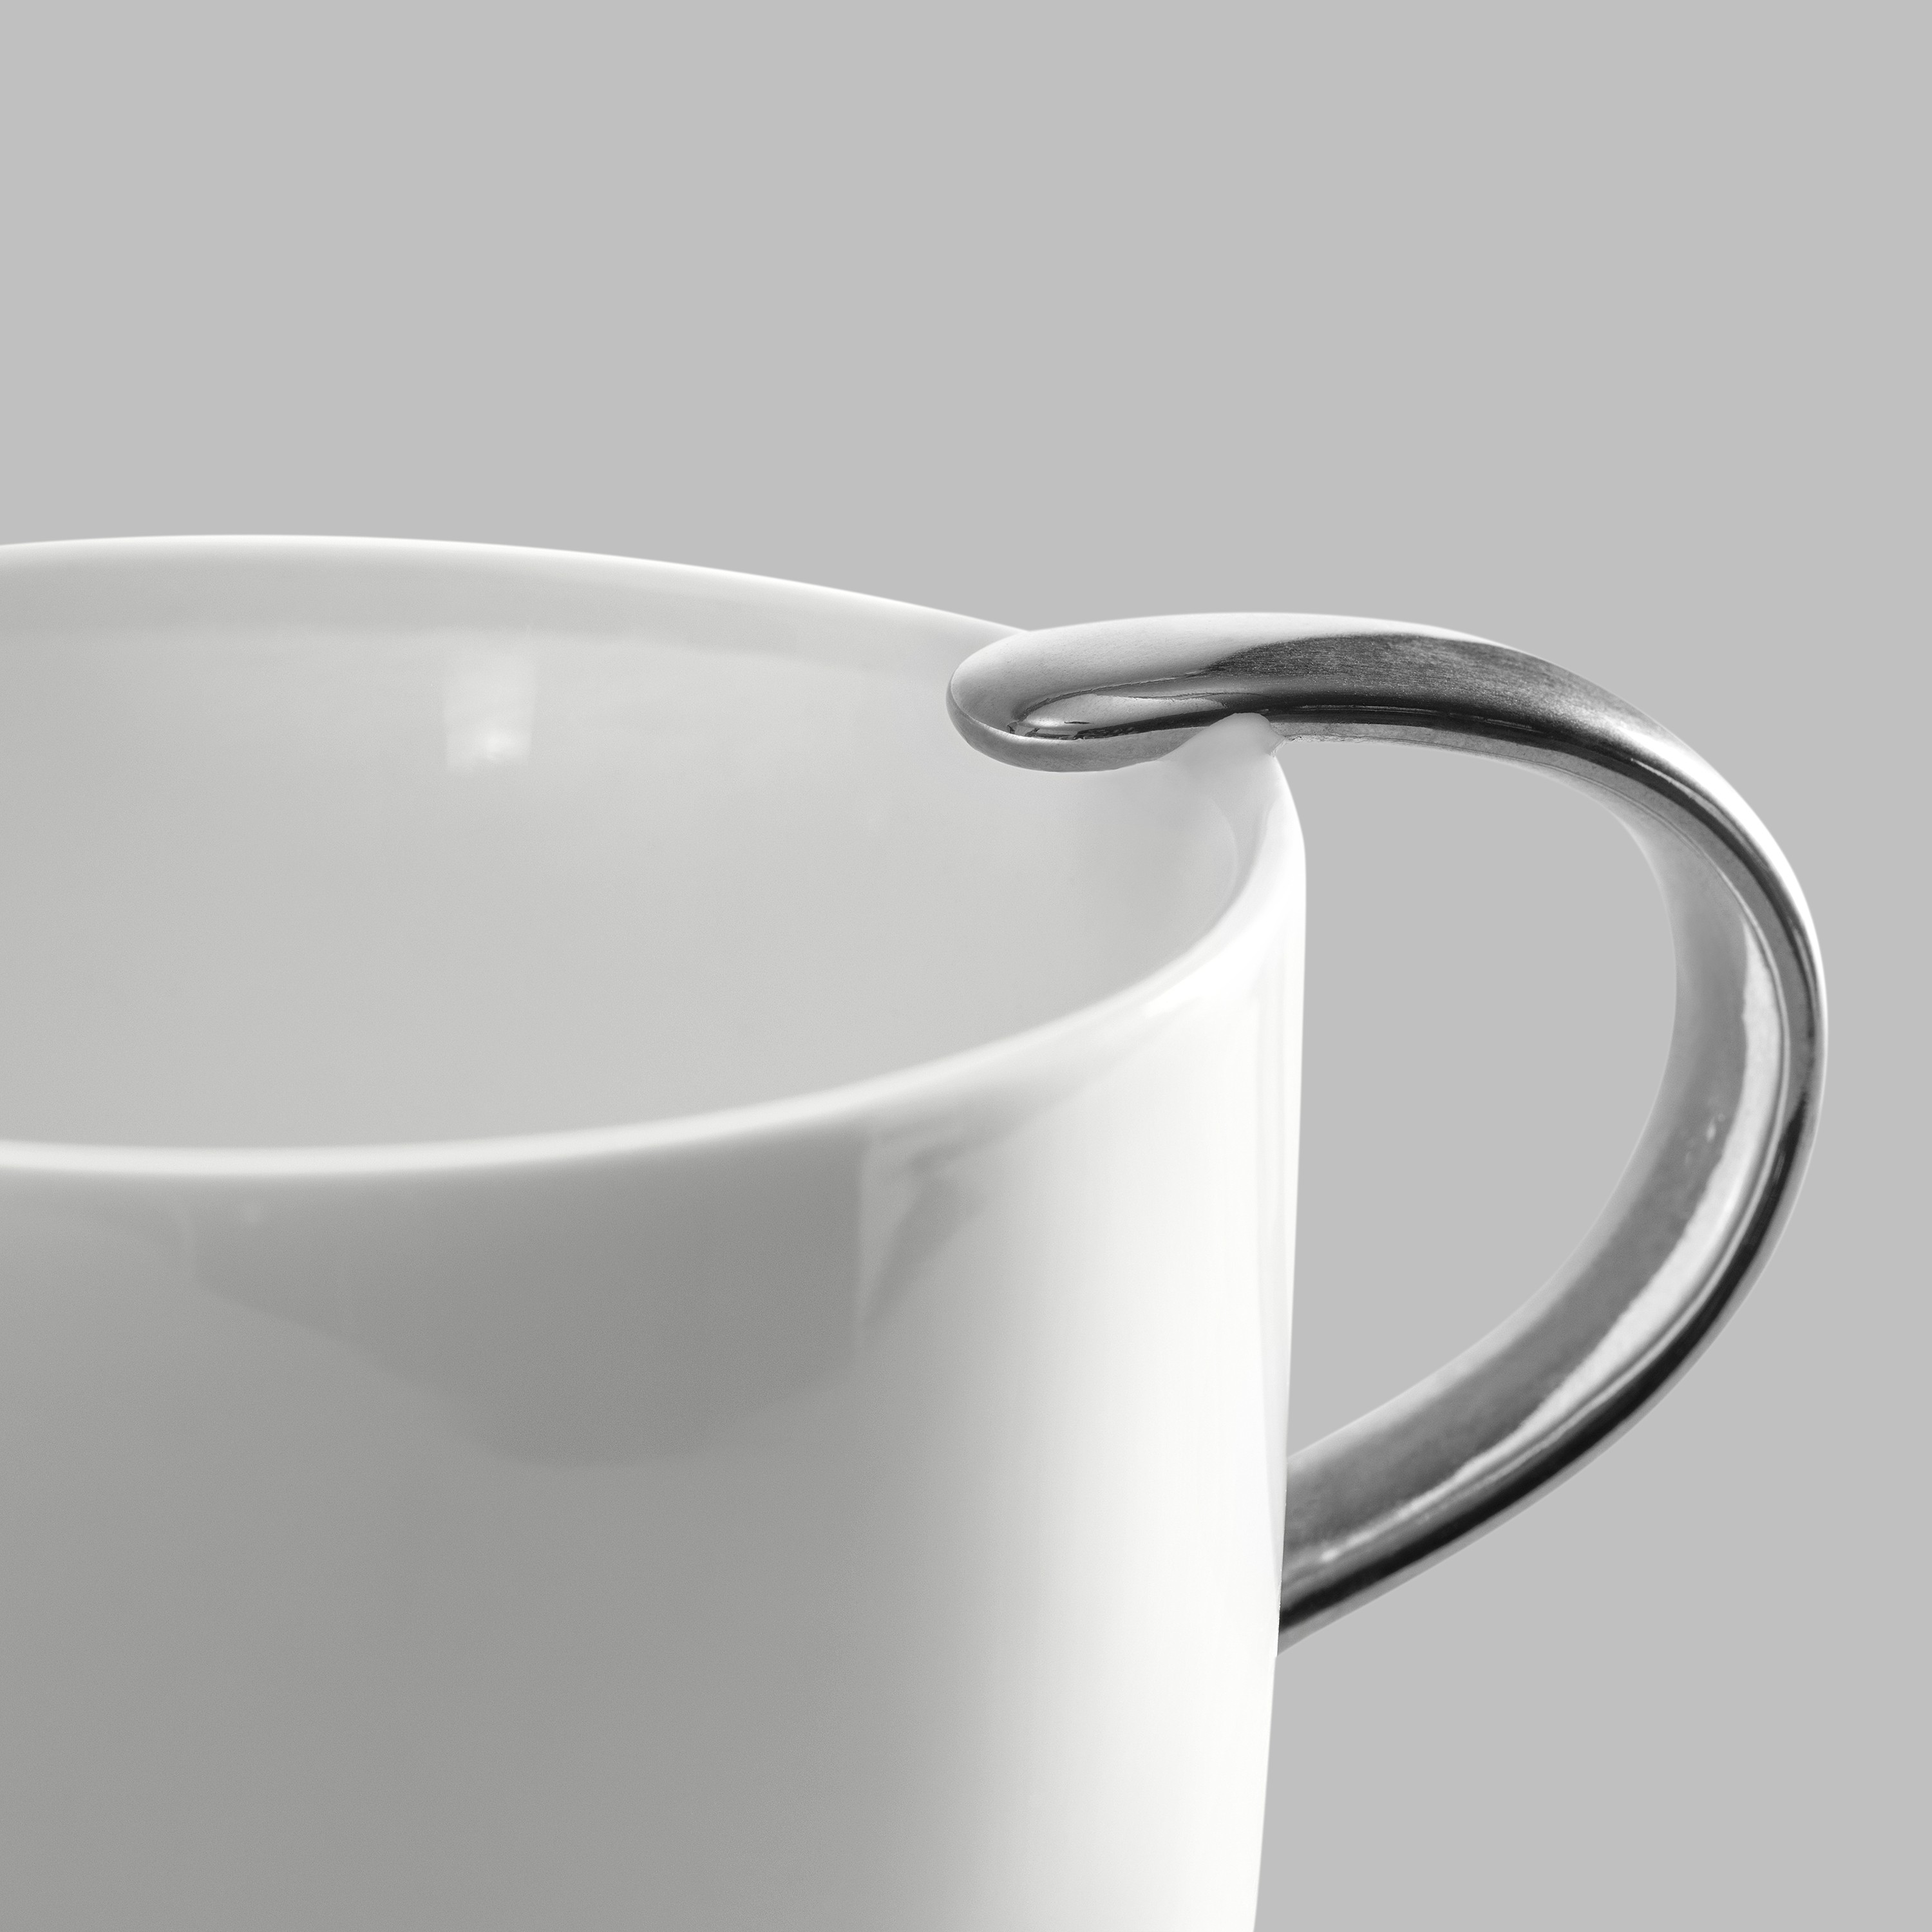 Чашки Чайная пара Бинош Фарфор Титан - Фото